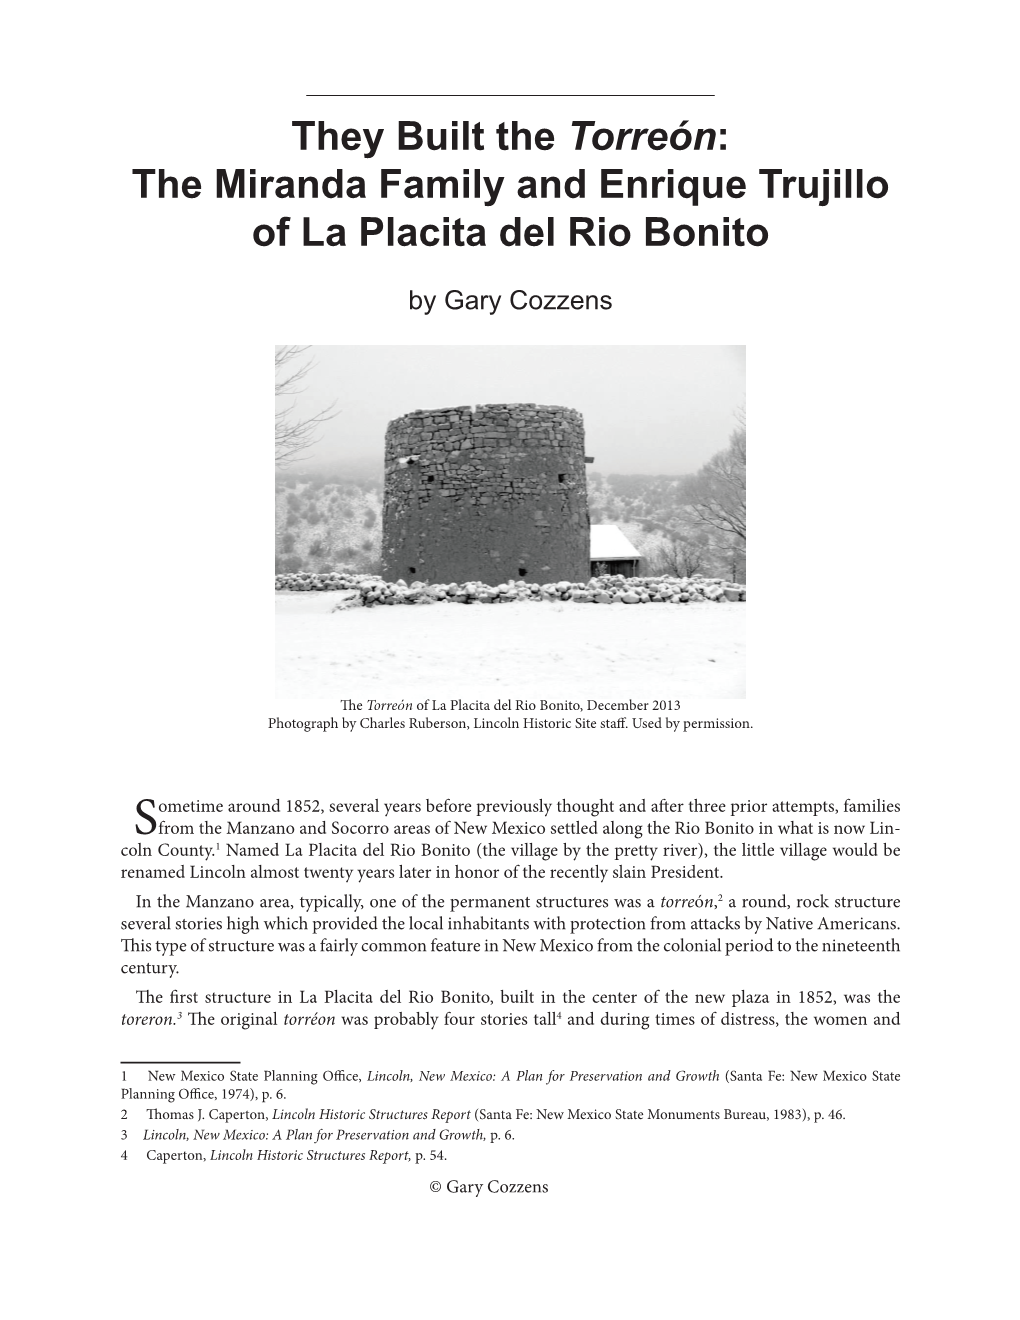 The Miranda Family and Enrique Trujillo of La Placita Del Rio Bonito